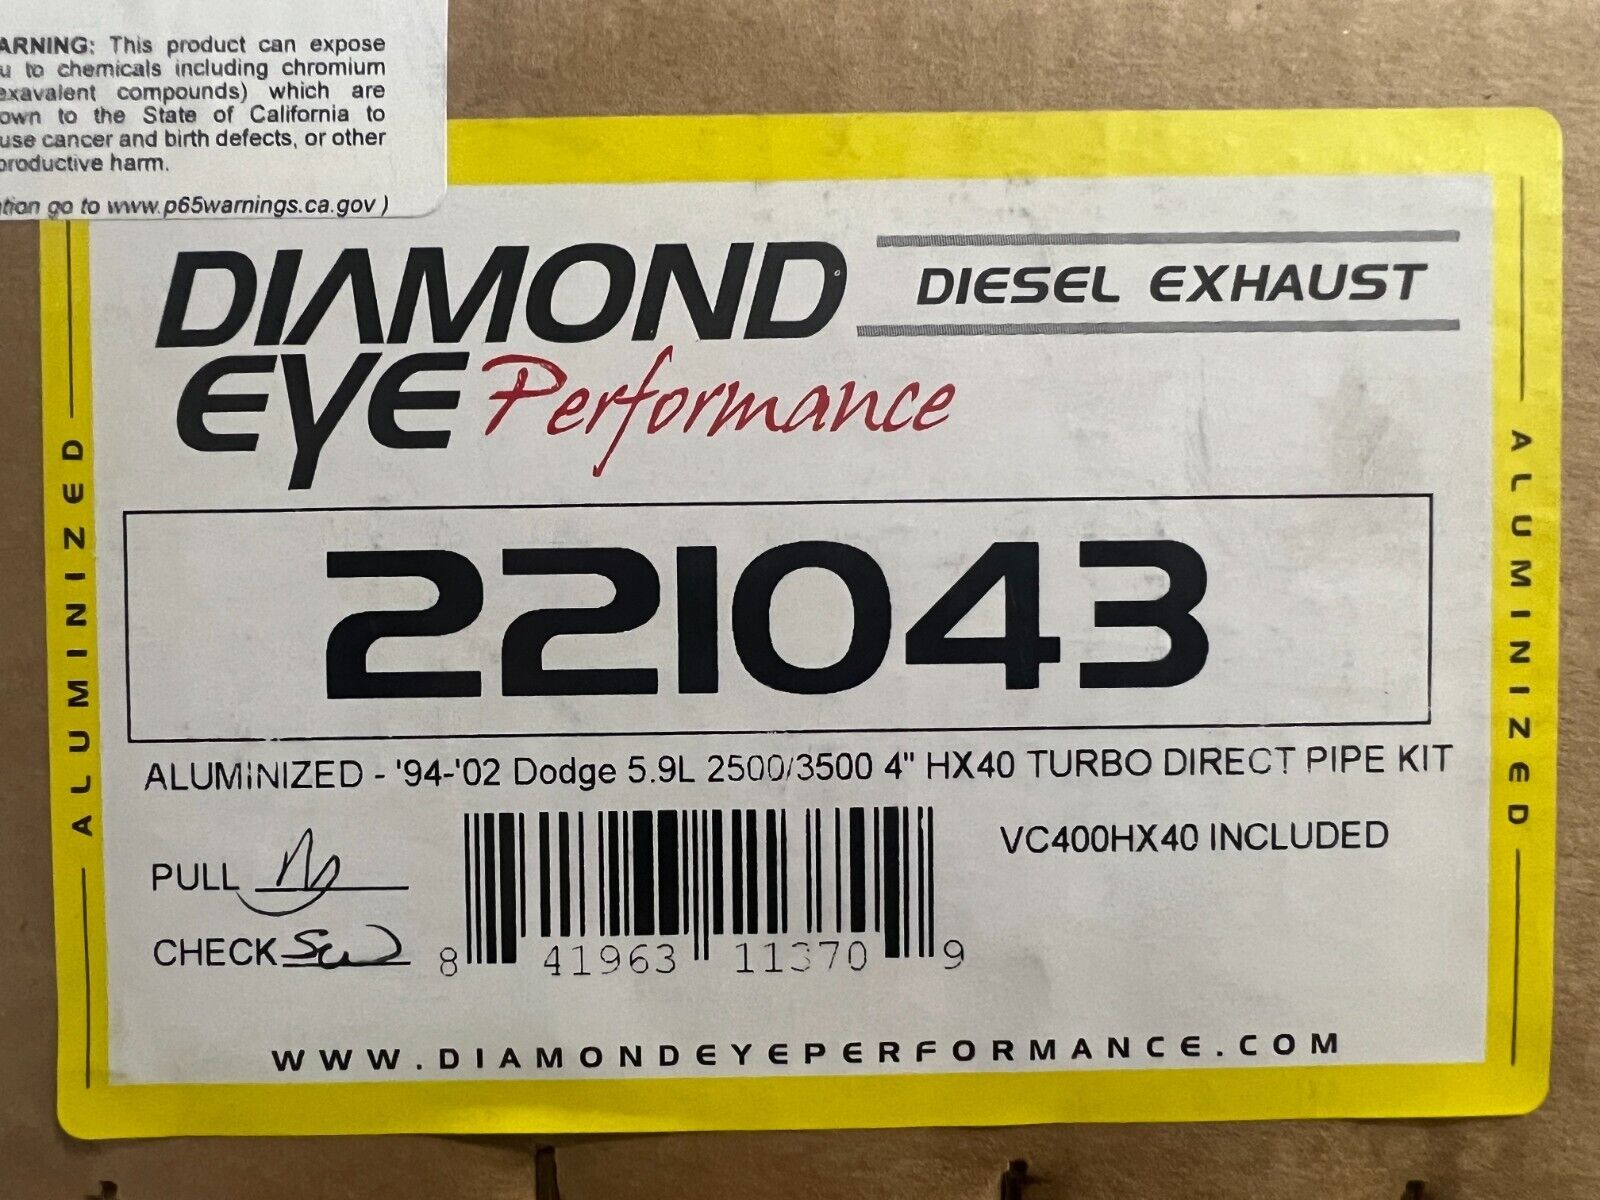 Diamond Eye Turbo Pipe Kit  221043 1994-2002 Fits Dodge 5.9L CUMMINS 2500/3500